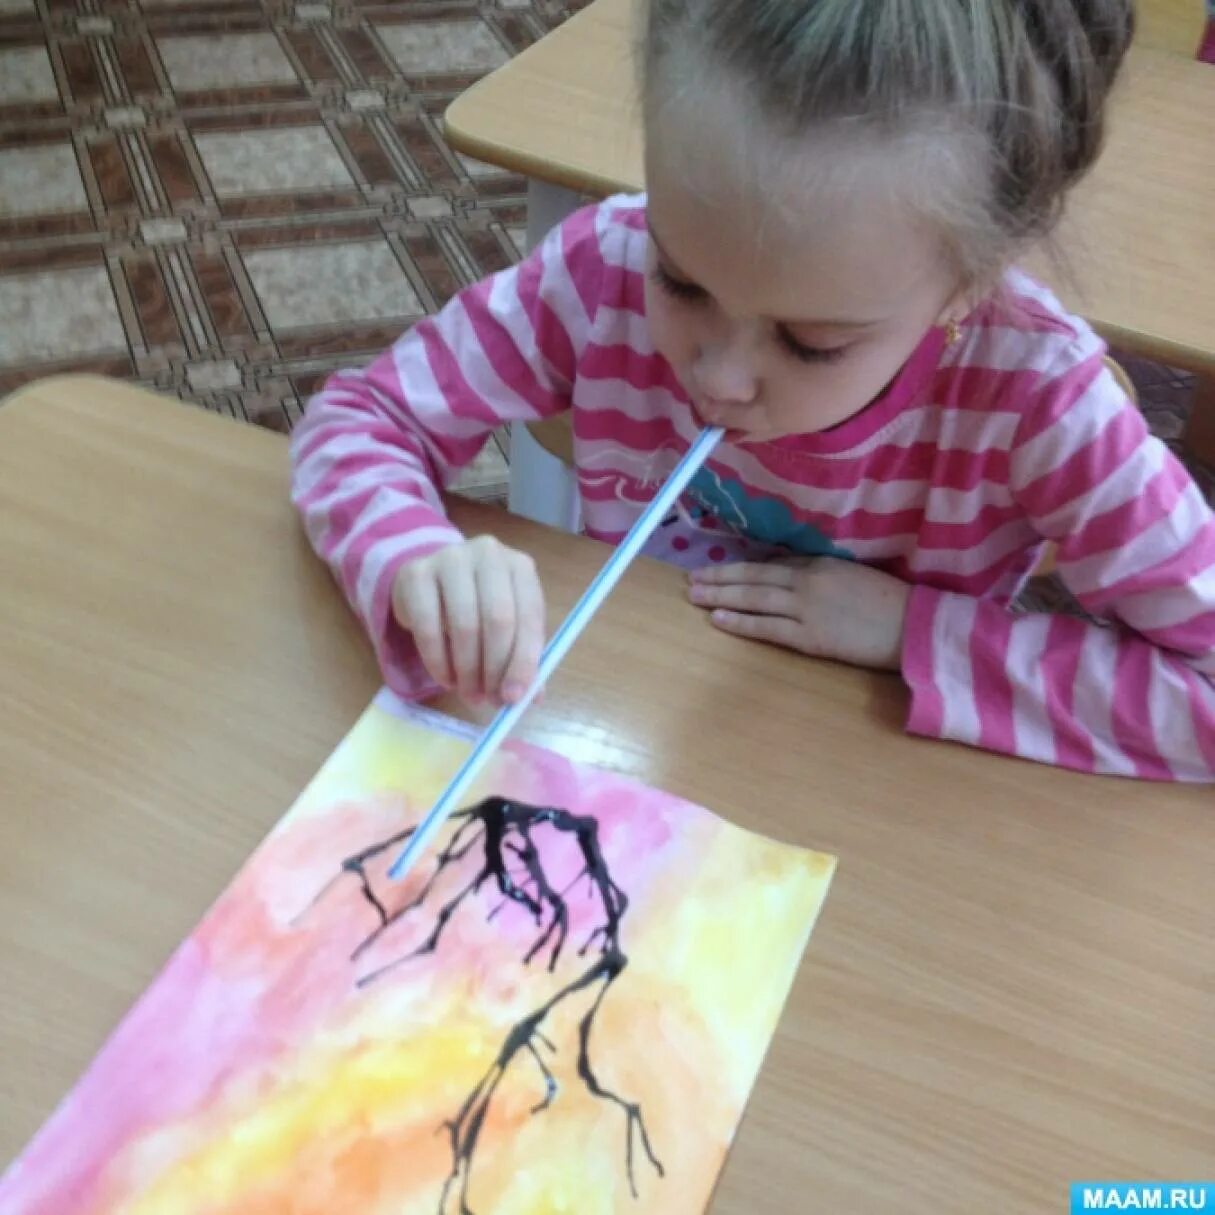 Нетрадиционное рисование. Нестандартные техники рисования для детей. Нетрадиционное рисование для детей. Рисование трубочкой в детском саду.